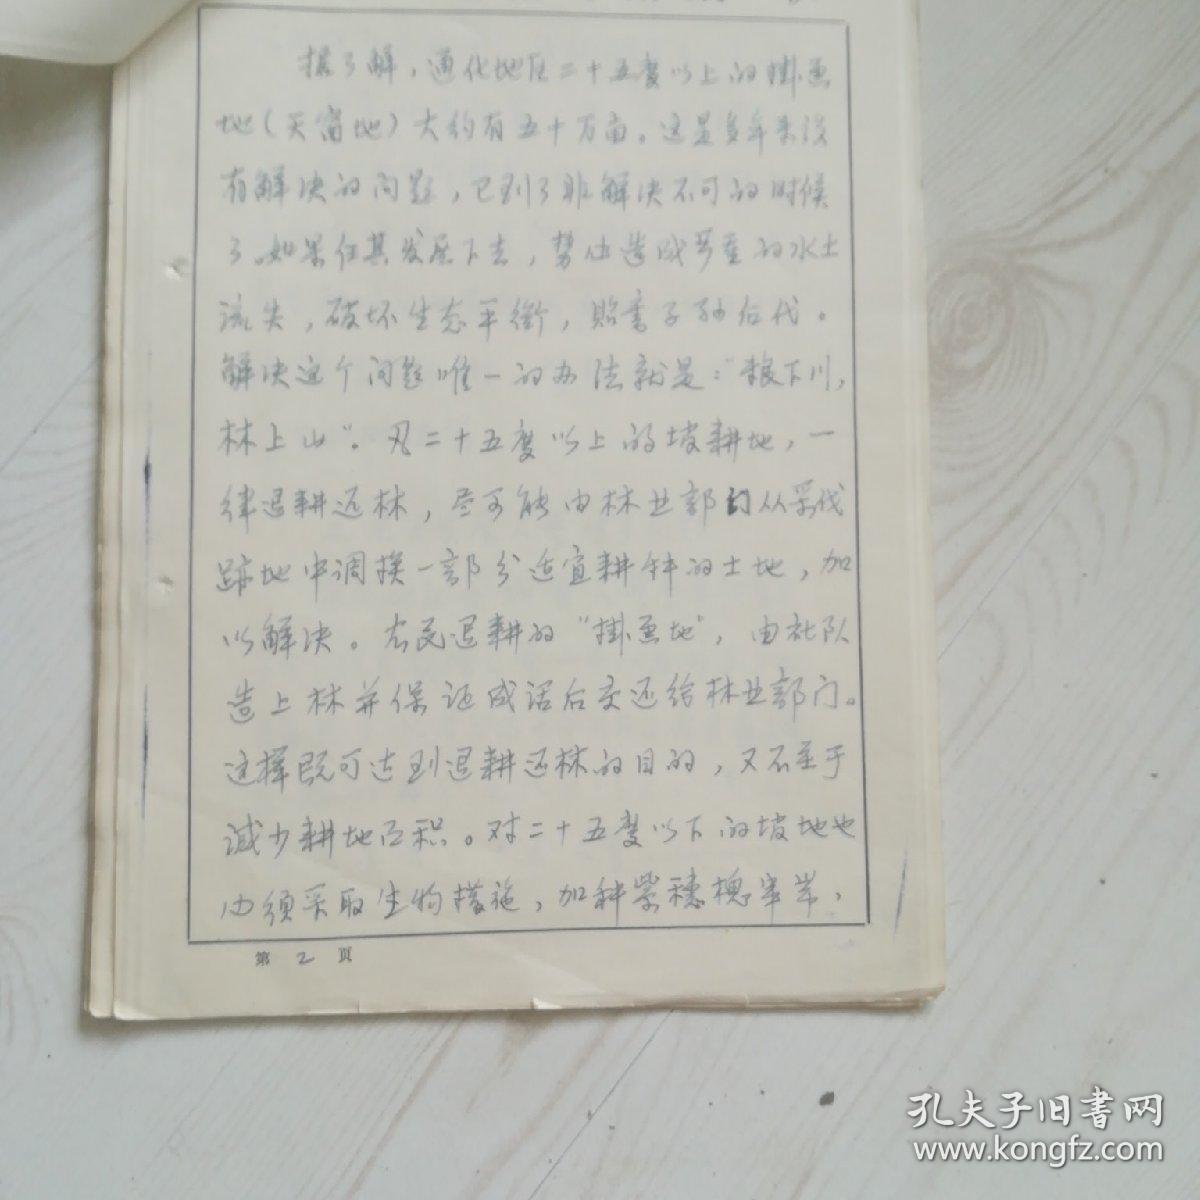 中纪委原书记强晓初手写签名电报底稿10页